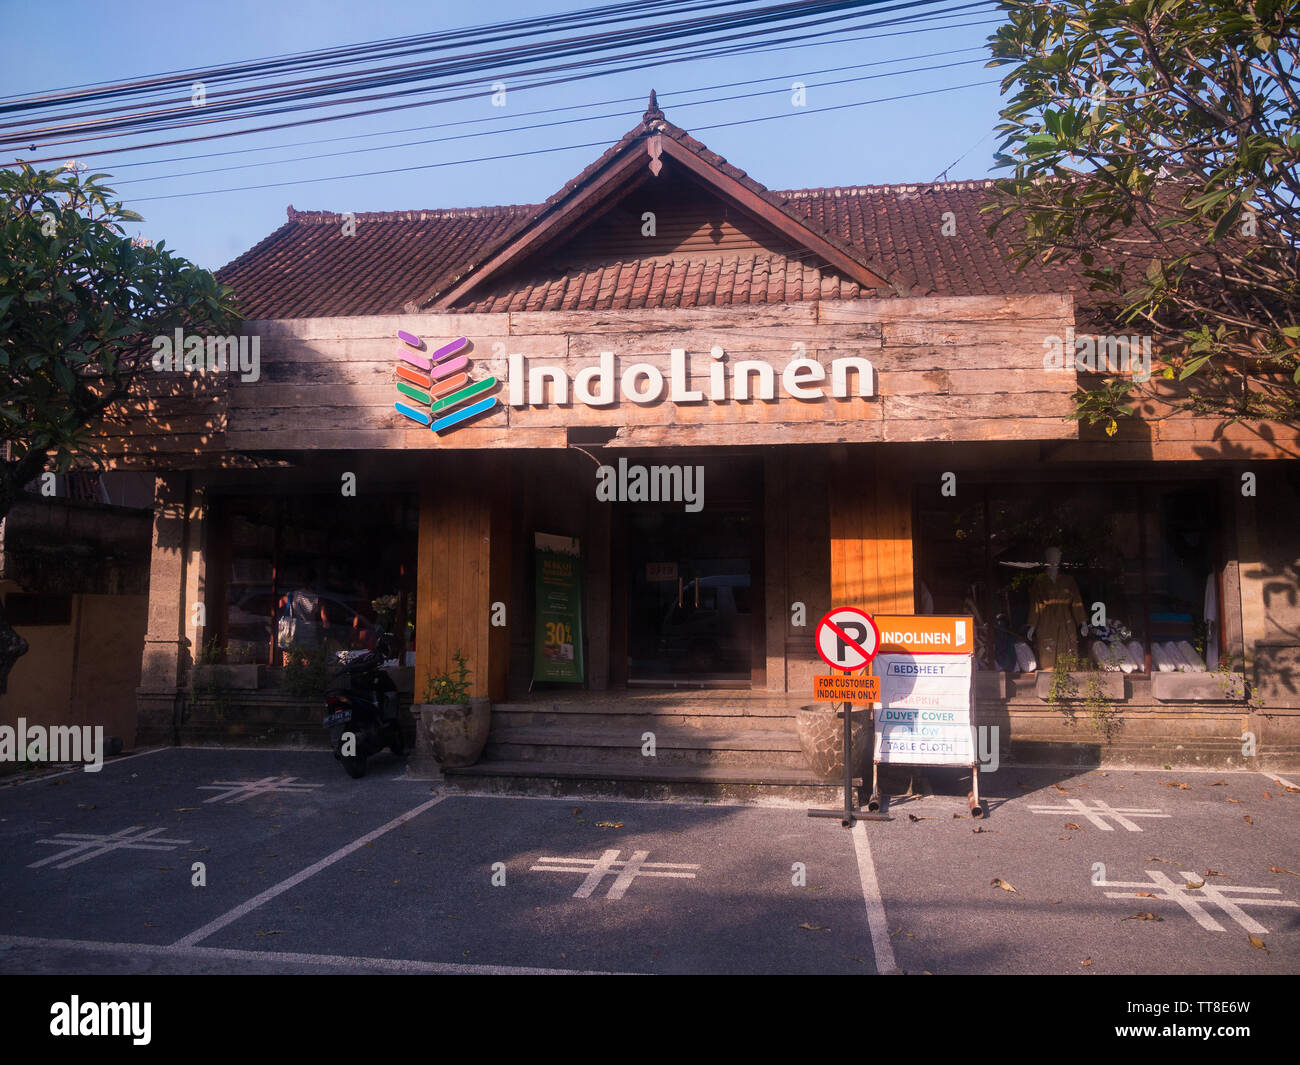 Vista de una tienda IndoLinen en Bali, Indonesia, que se especializa en la venta de productos de ropa, como sábanas, almohadas y manteles. Foto de stock